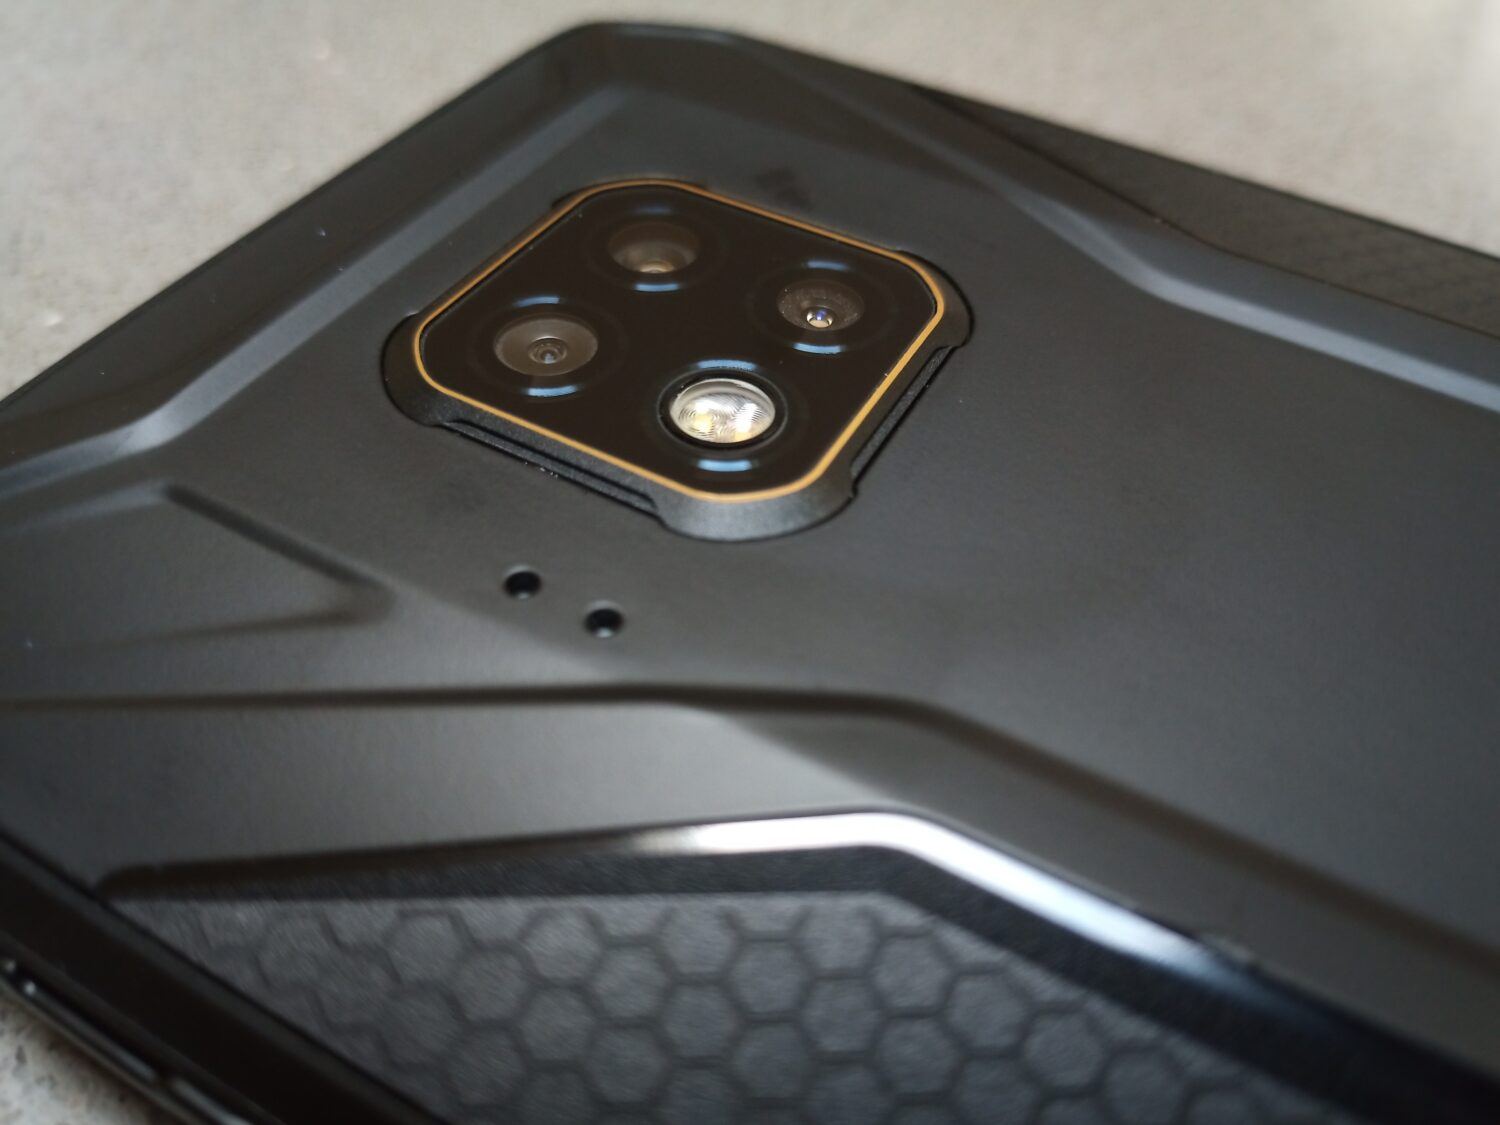 le S95 Pro est équipé de trois capteurs photo sur sa face arrière.